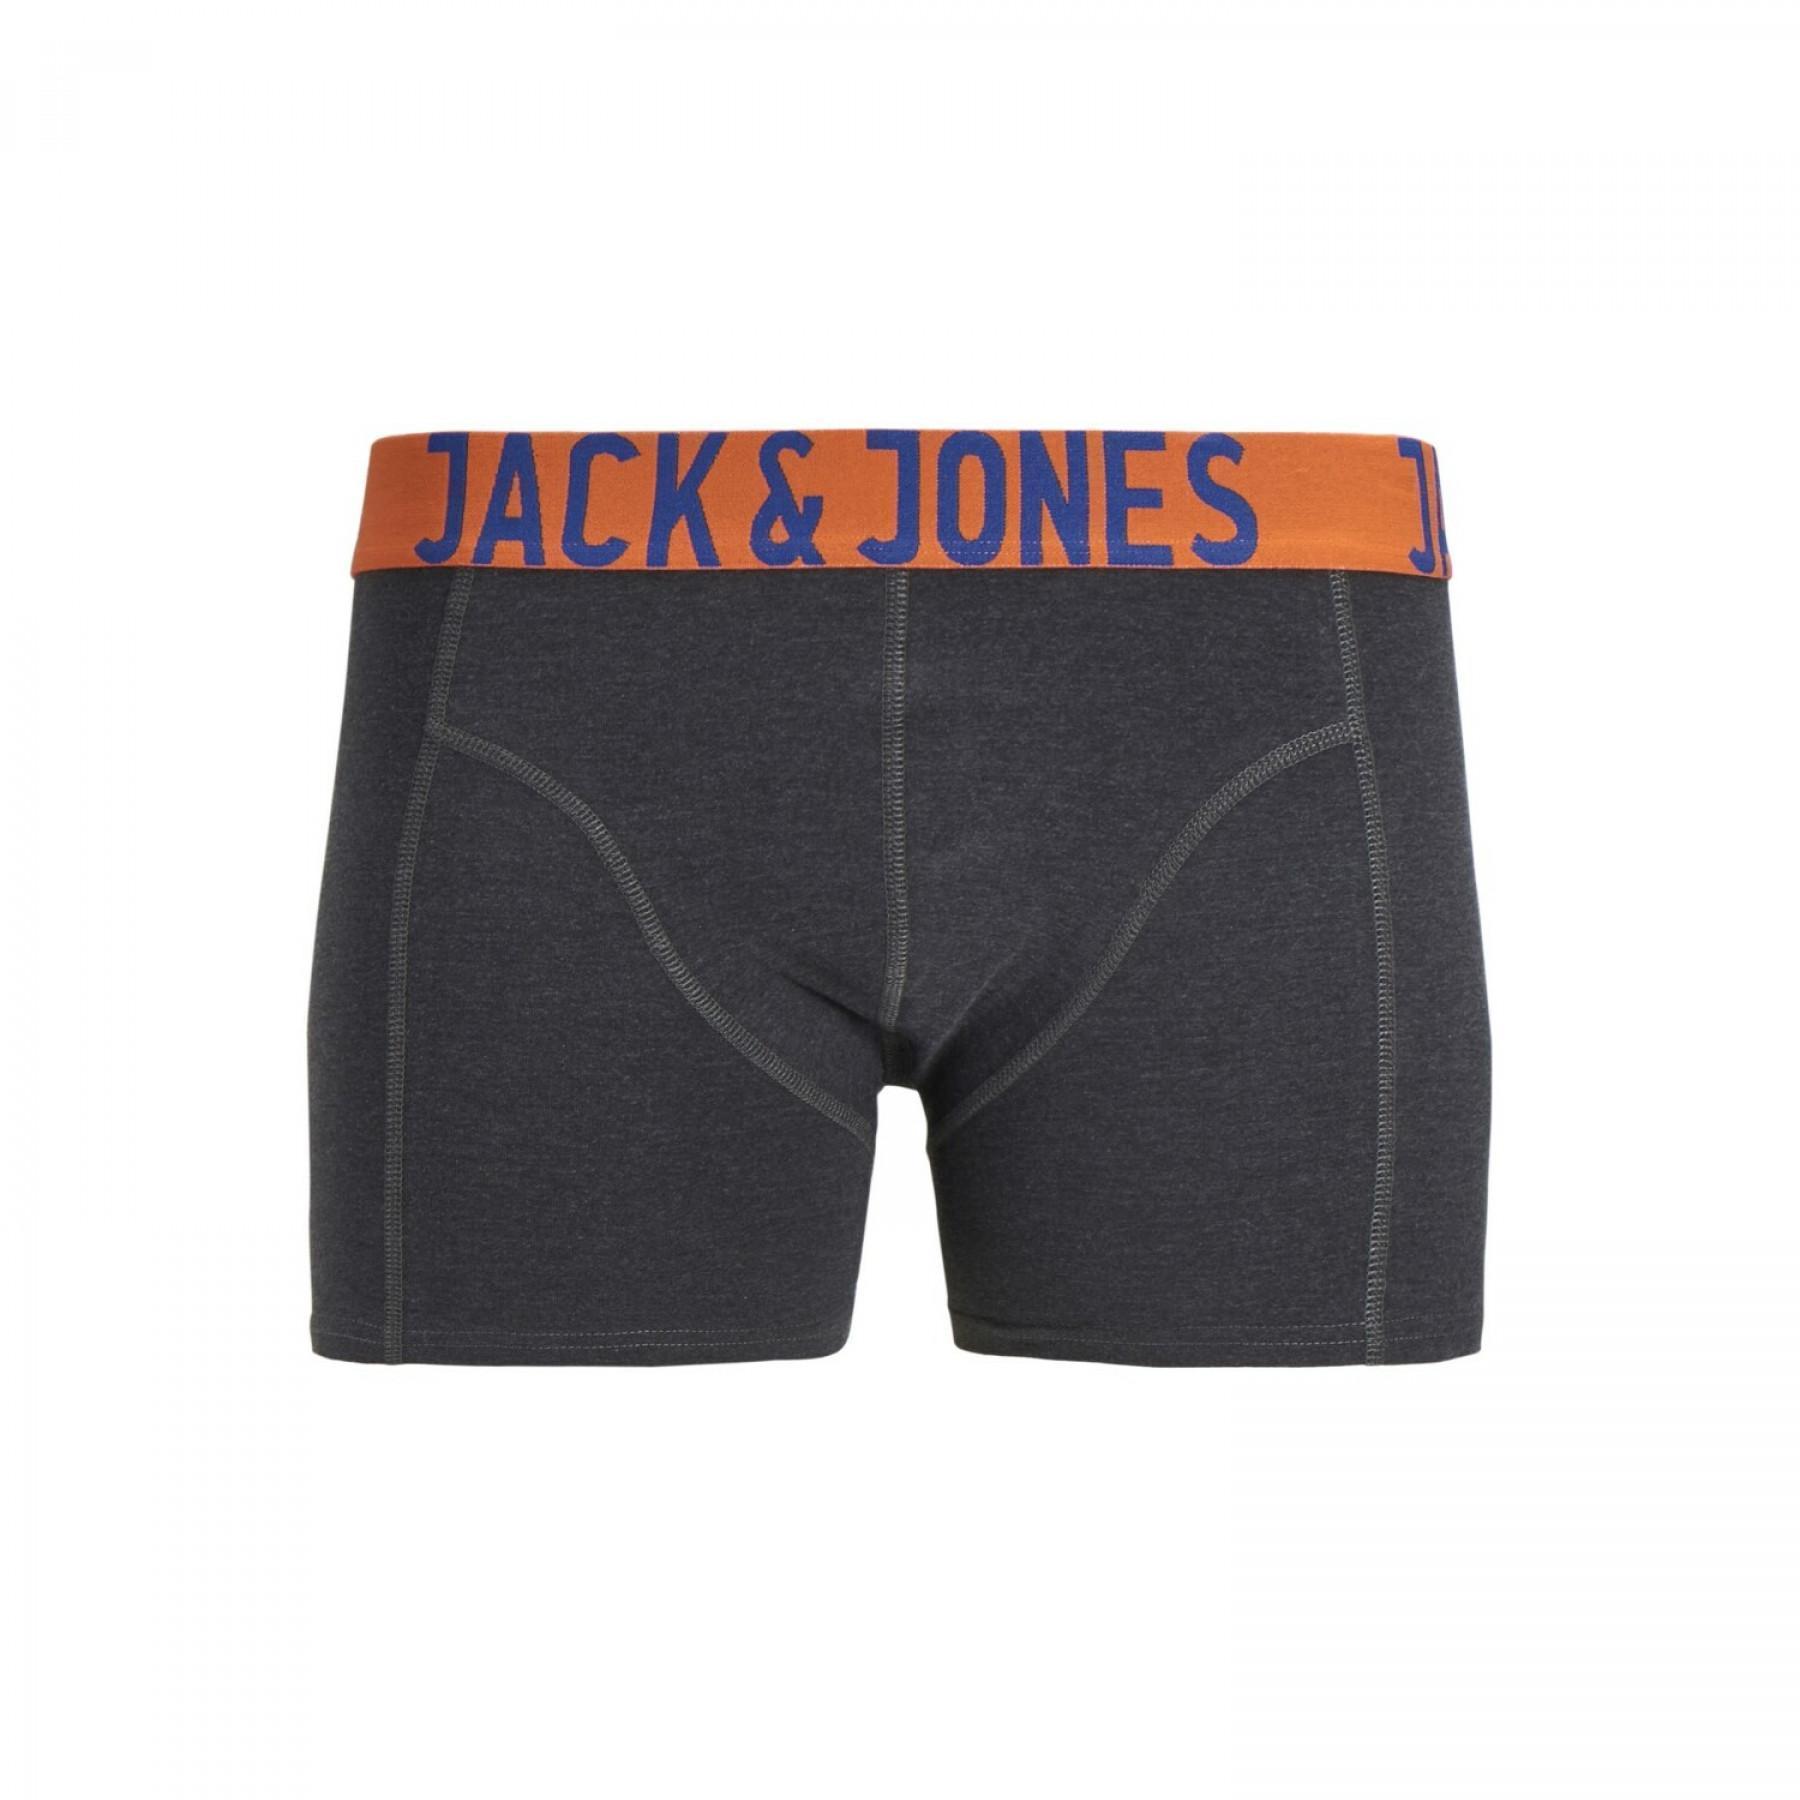 Set van 3 boxershorts Jack & Jones Jaccrazy solide